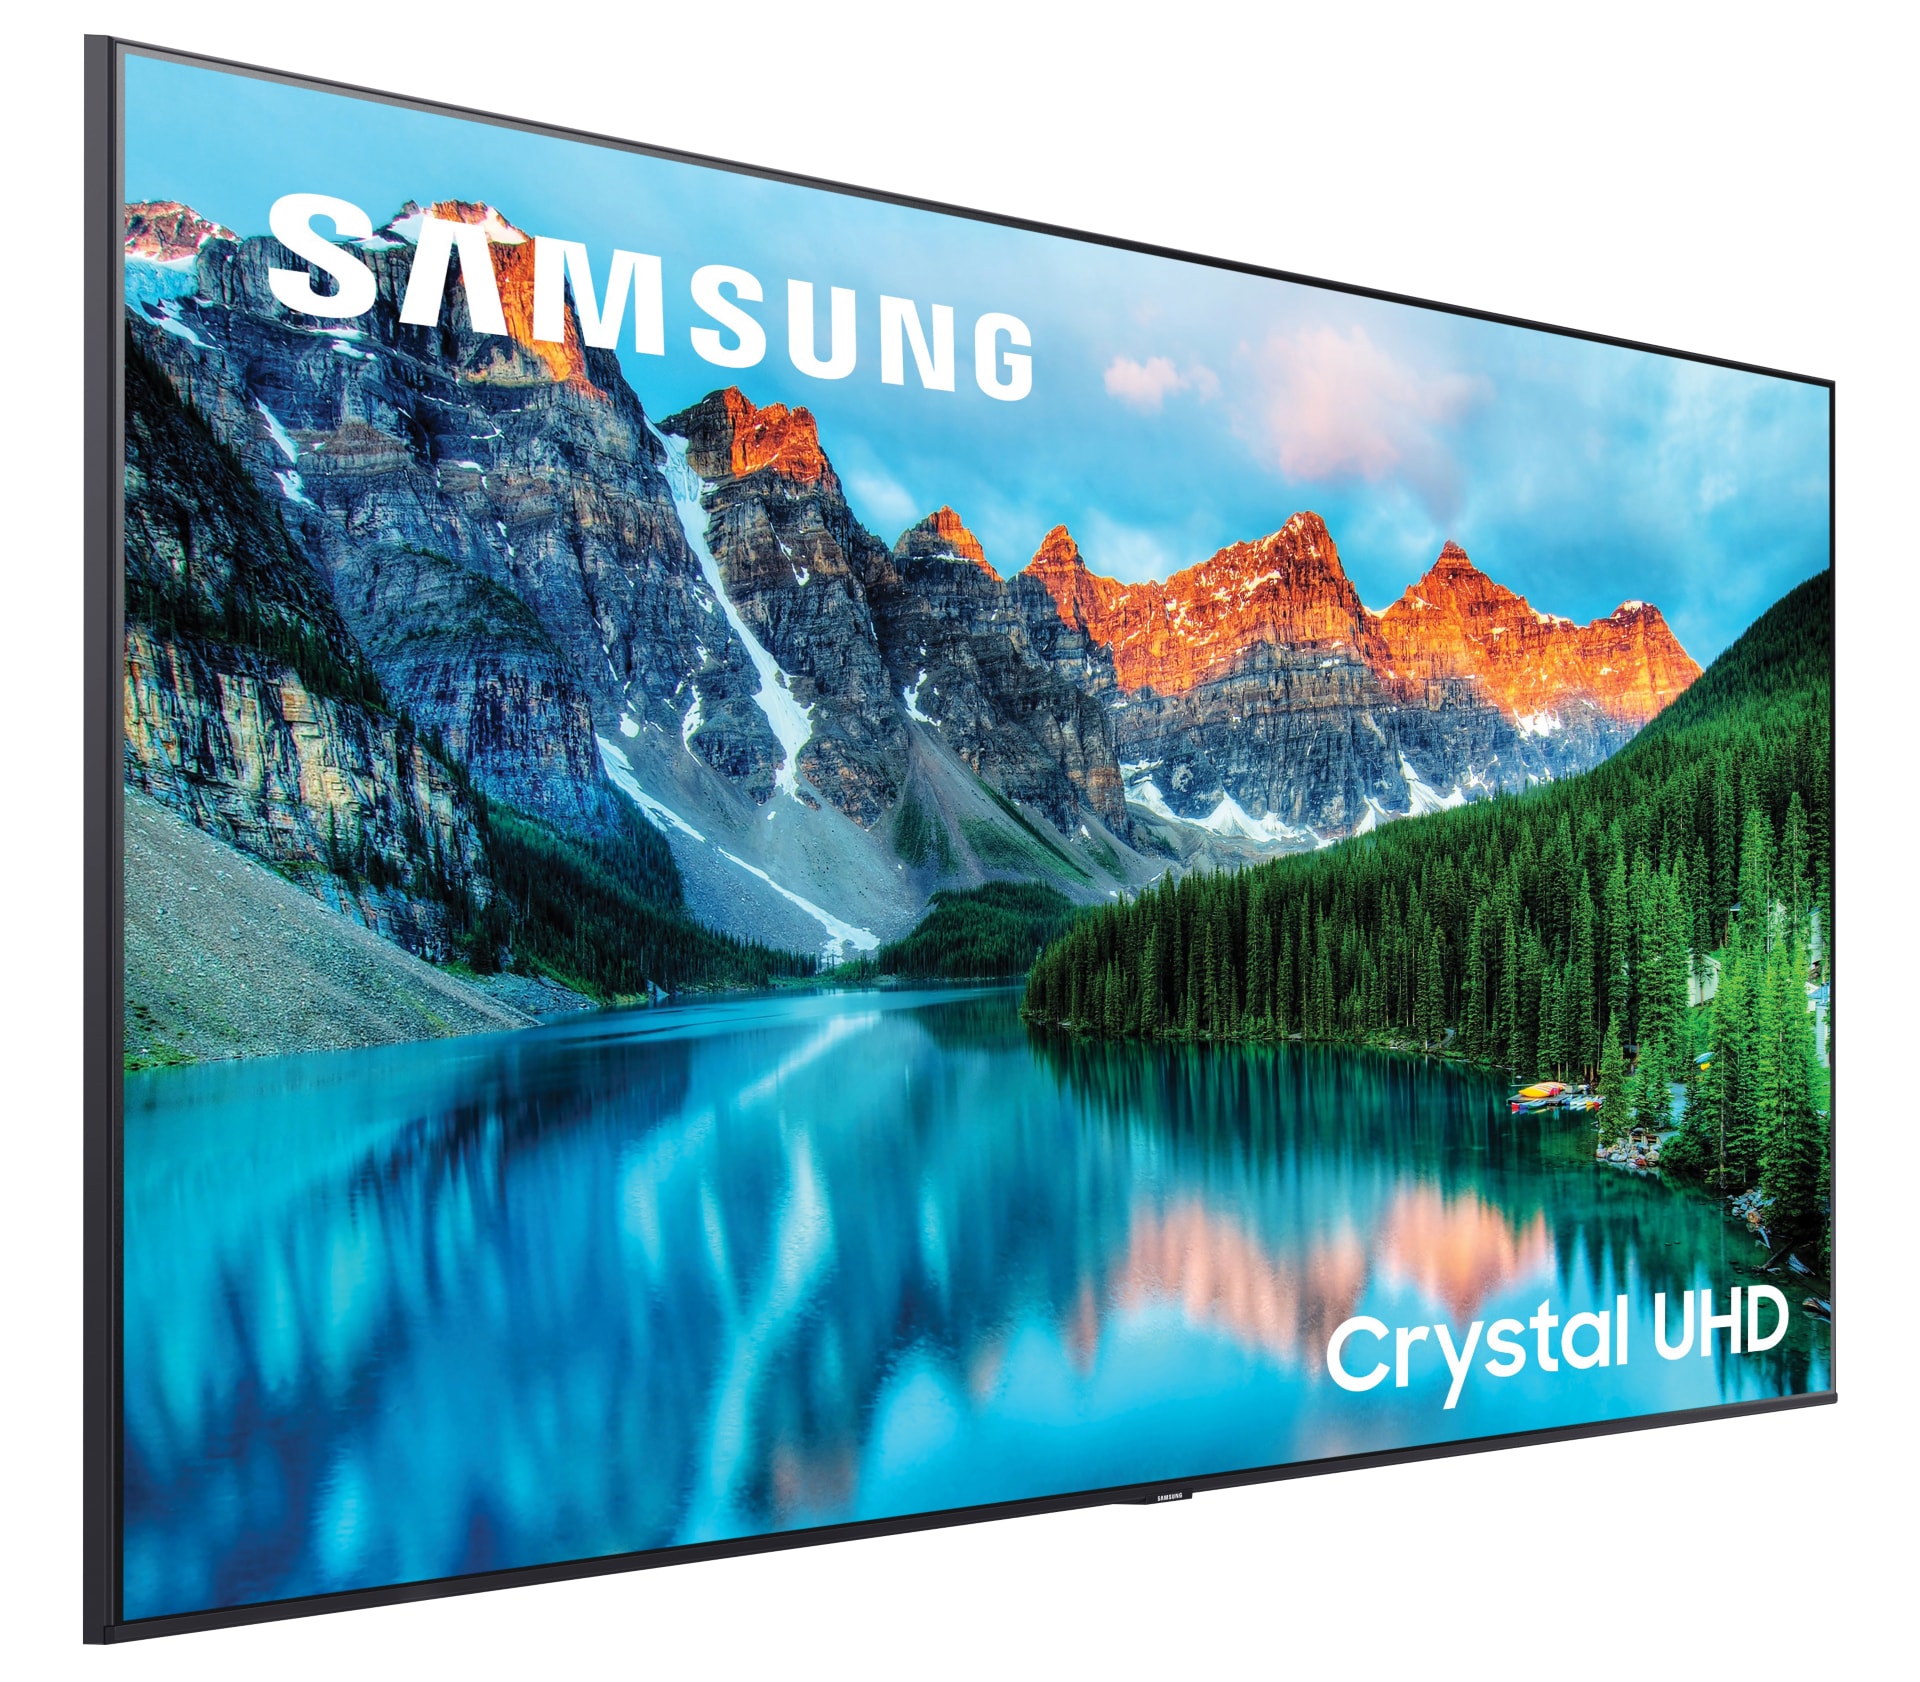 Samsung BE70T-H BET-H Pro TV Series - 70" LED-backlit LCD TV - 4K - for digital signage